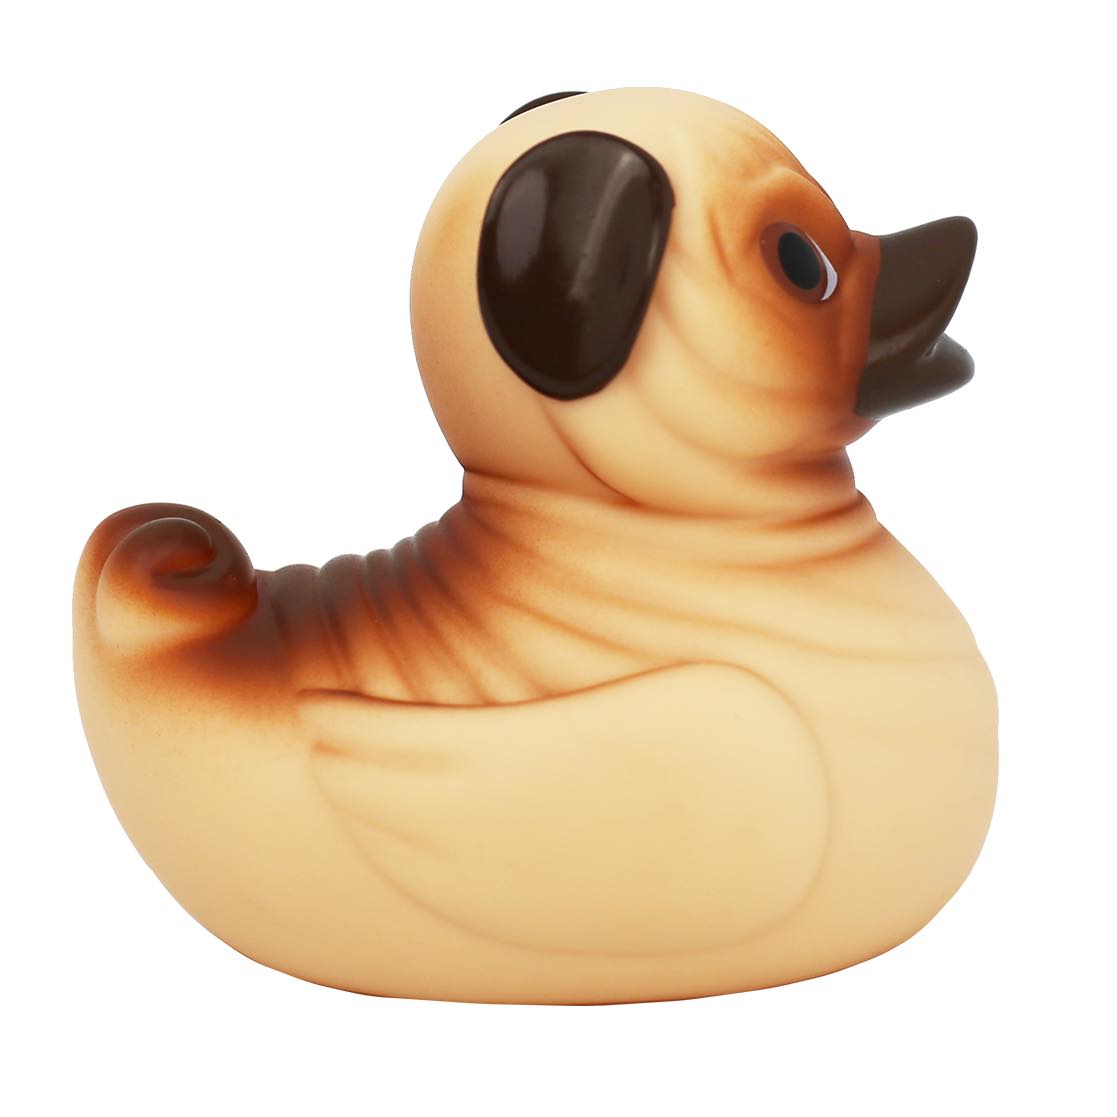 Pug Rubber Duck  Buy premium rubber ducks online